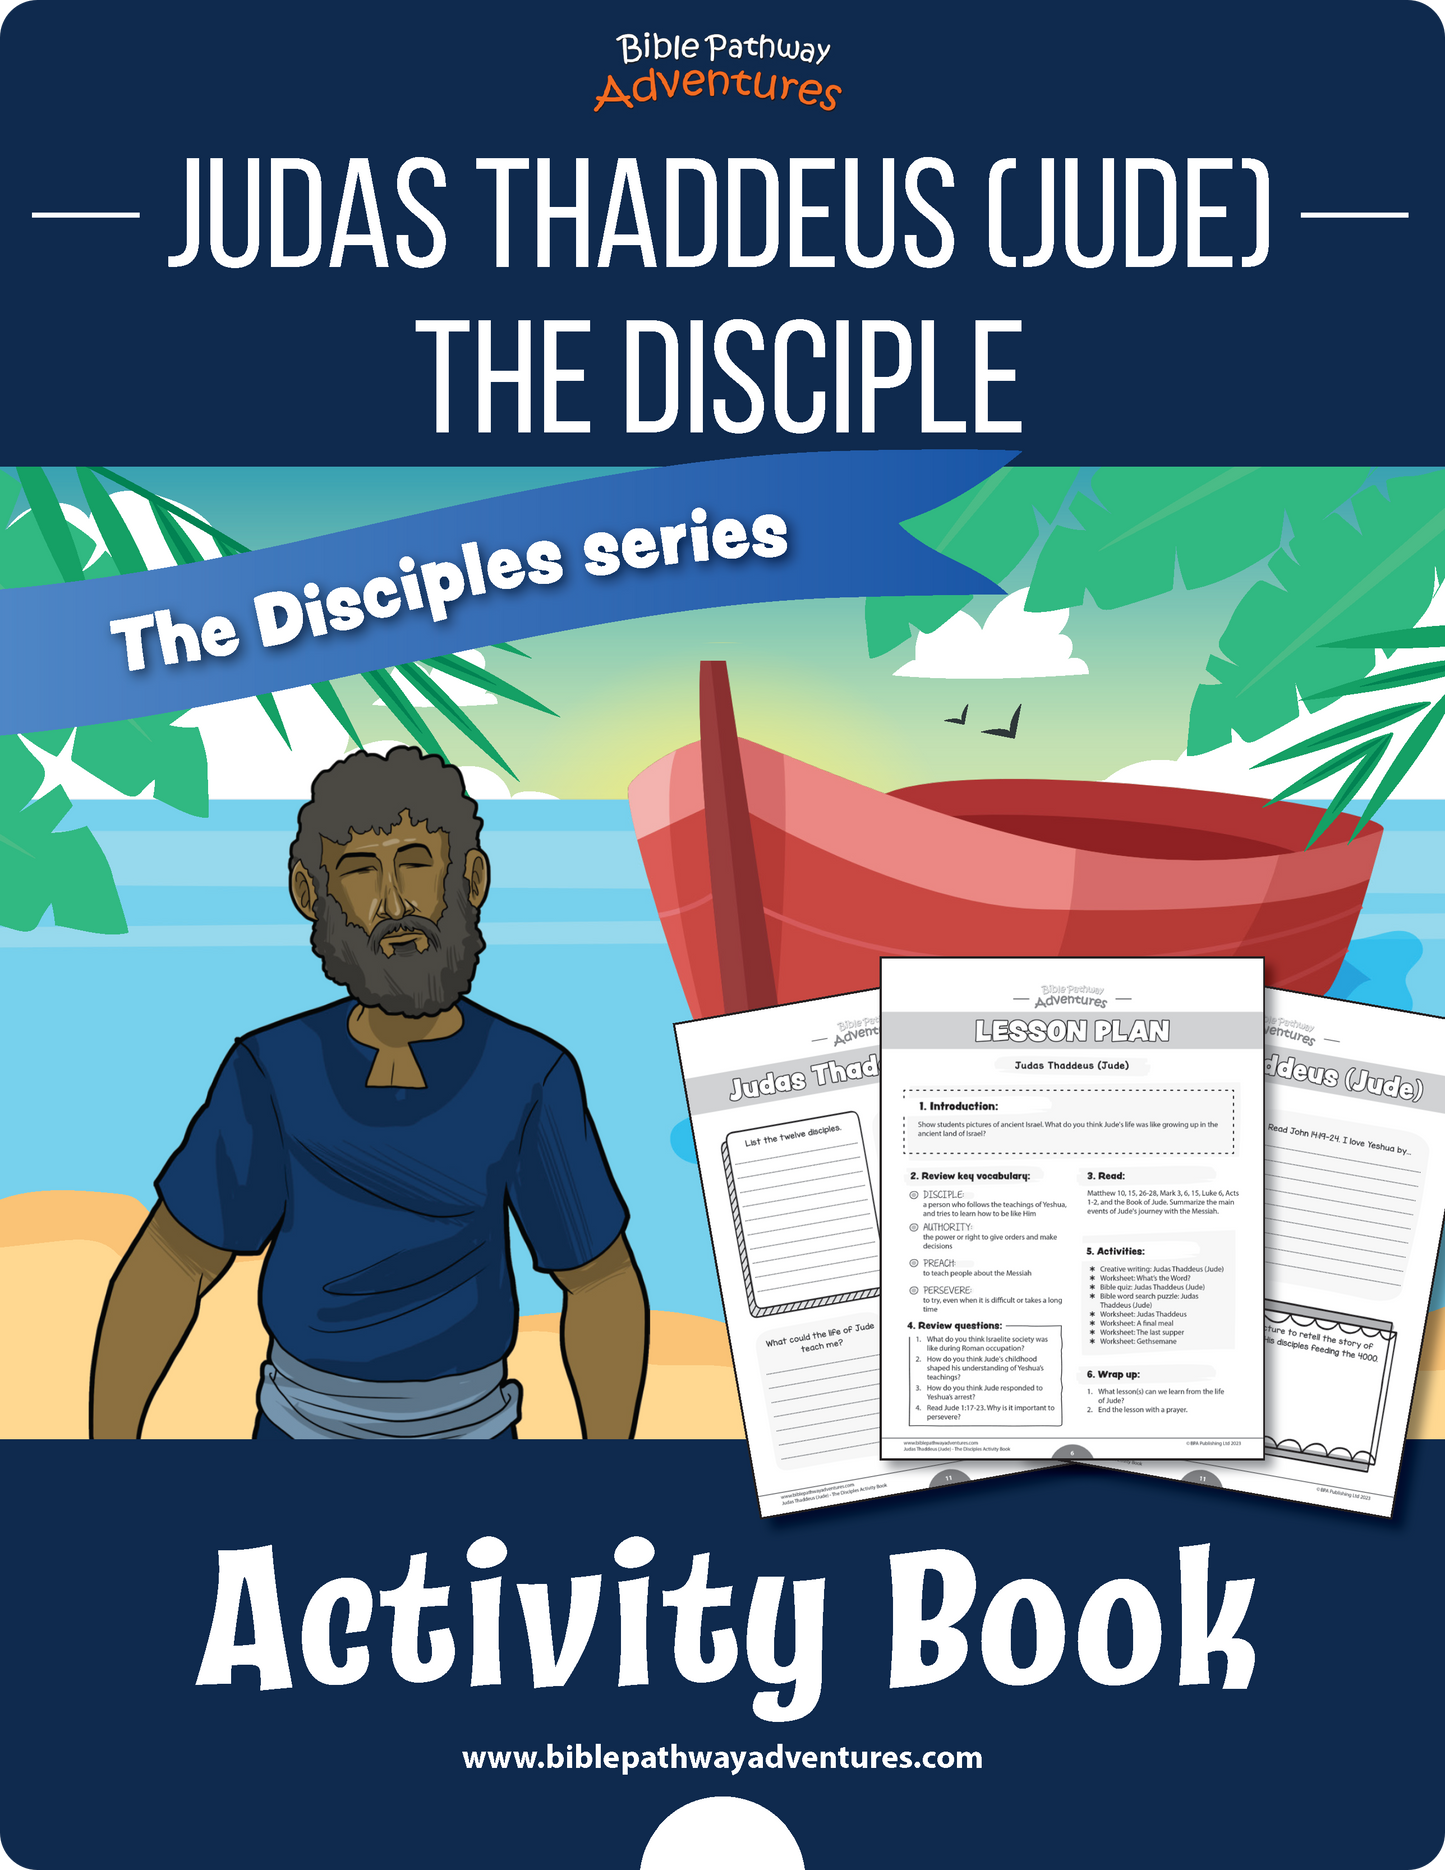 Judas Thaddeus (Jude): El libro de actividades para discípulos